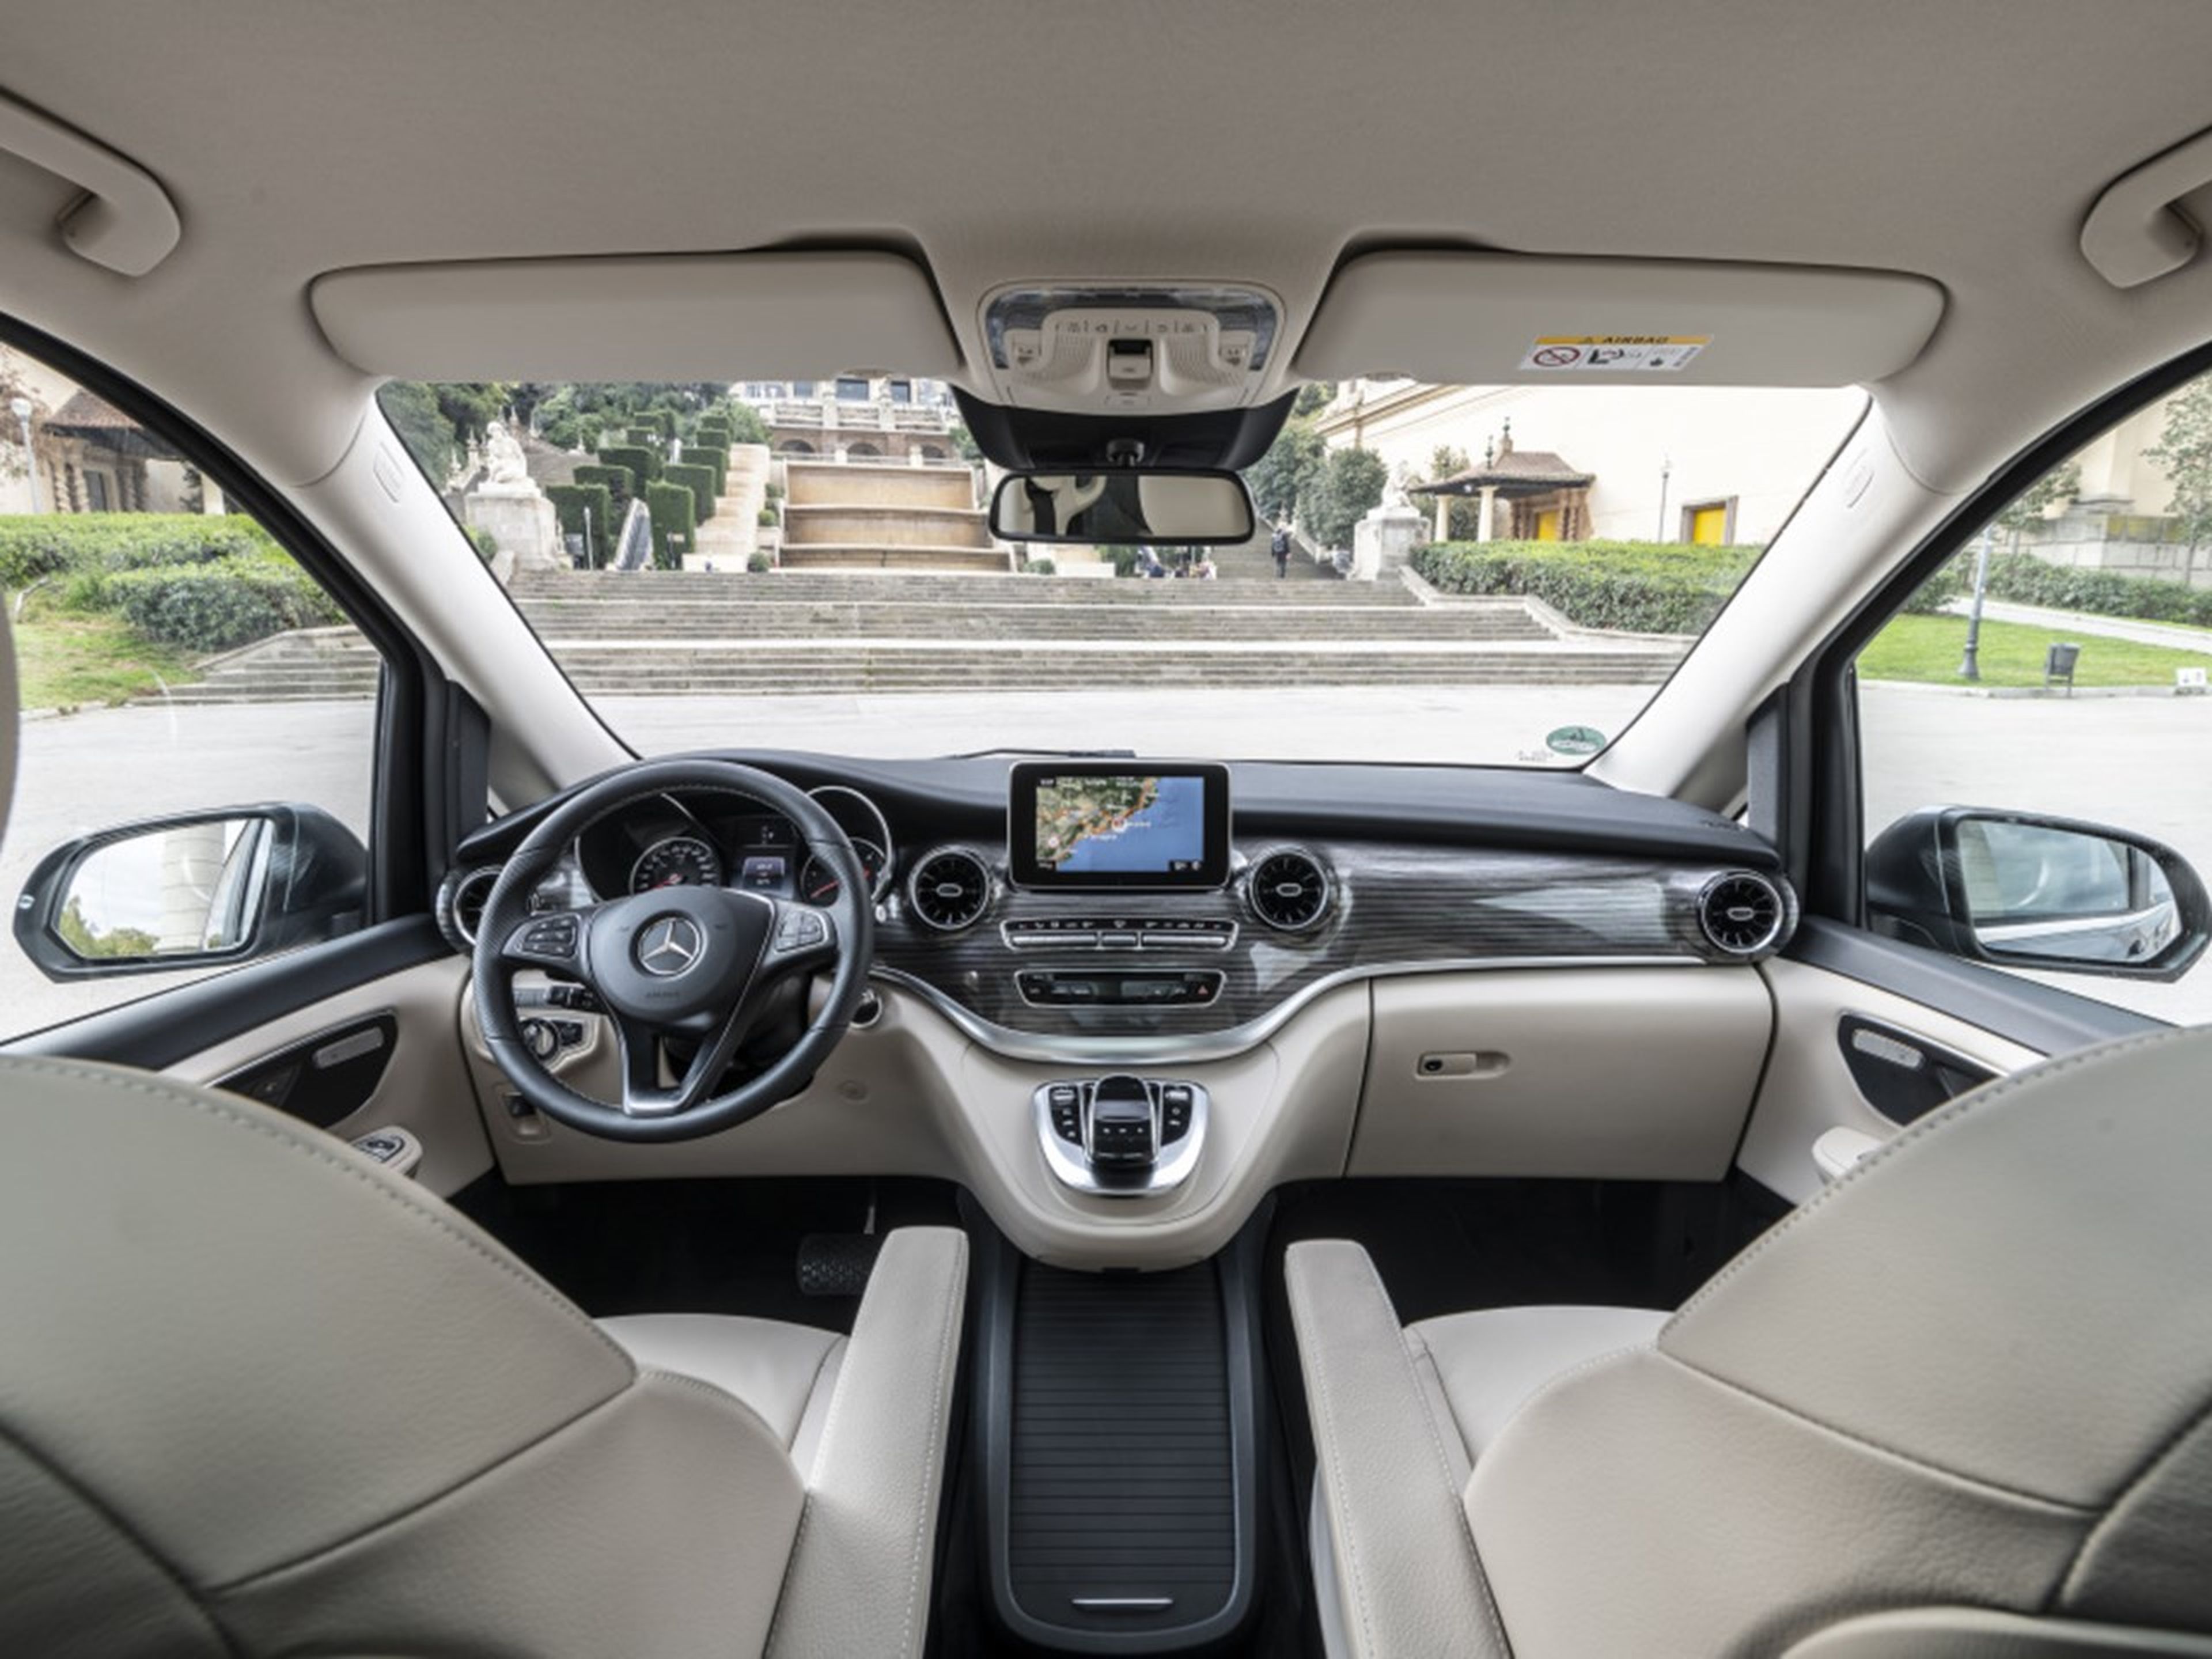 Mercedes-Benz Clase V interior 